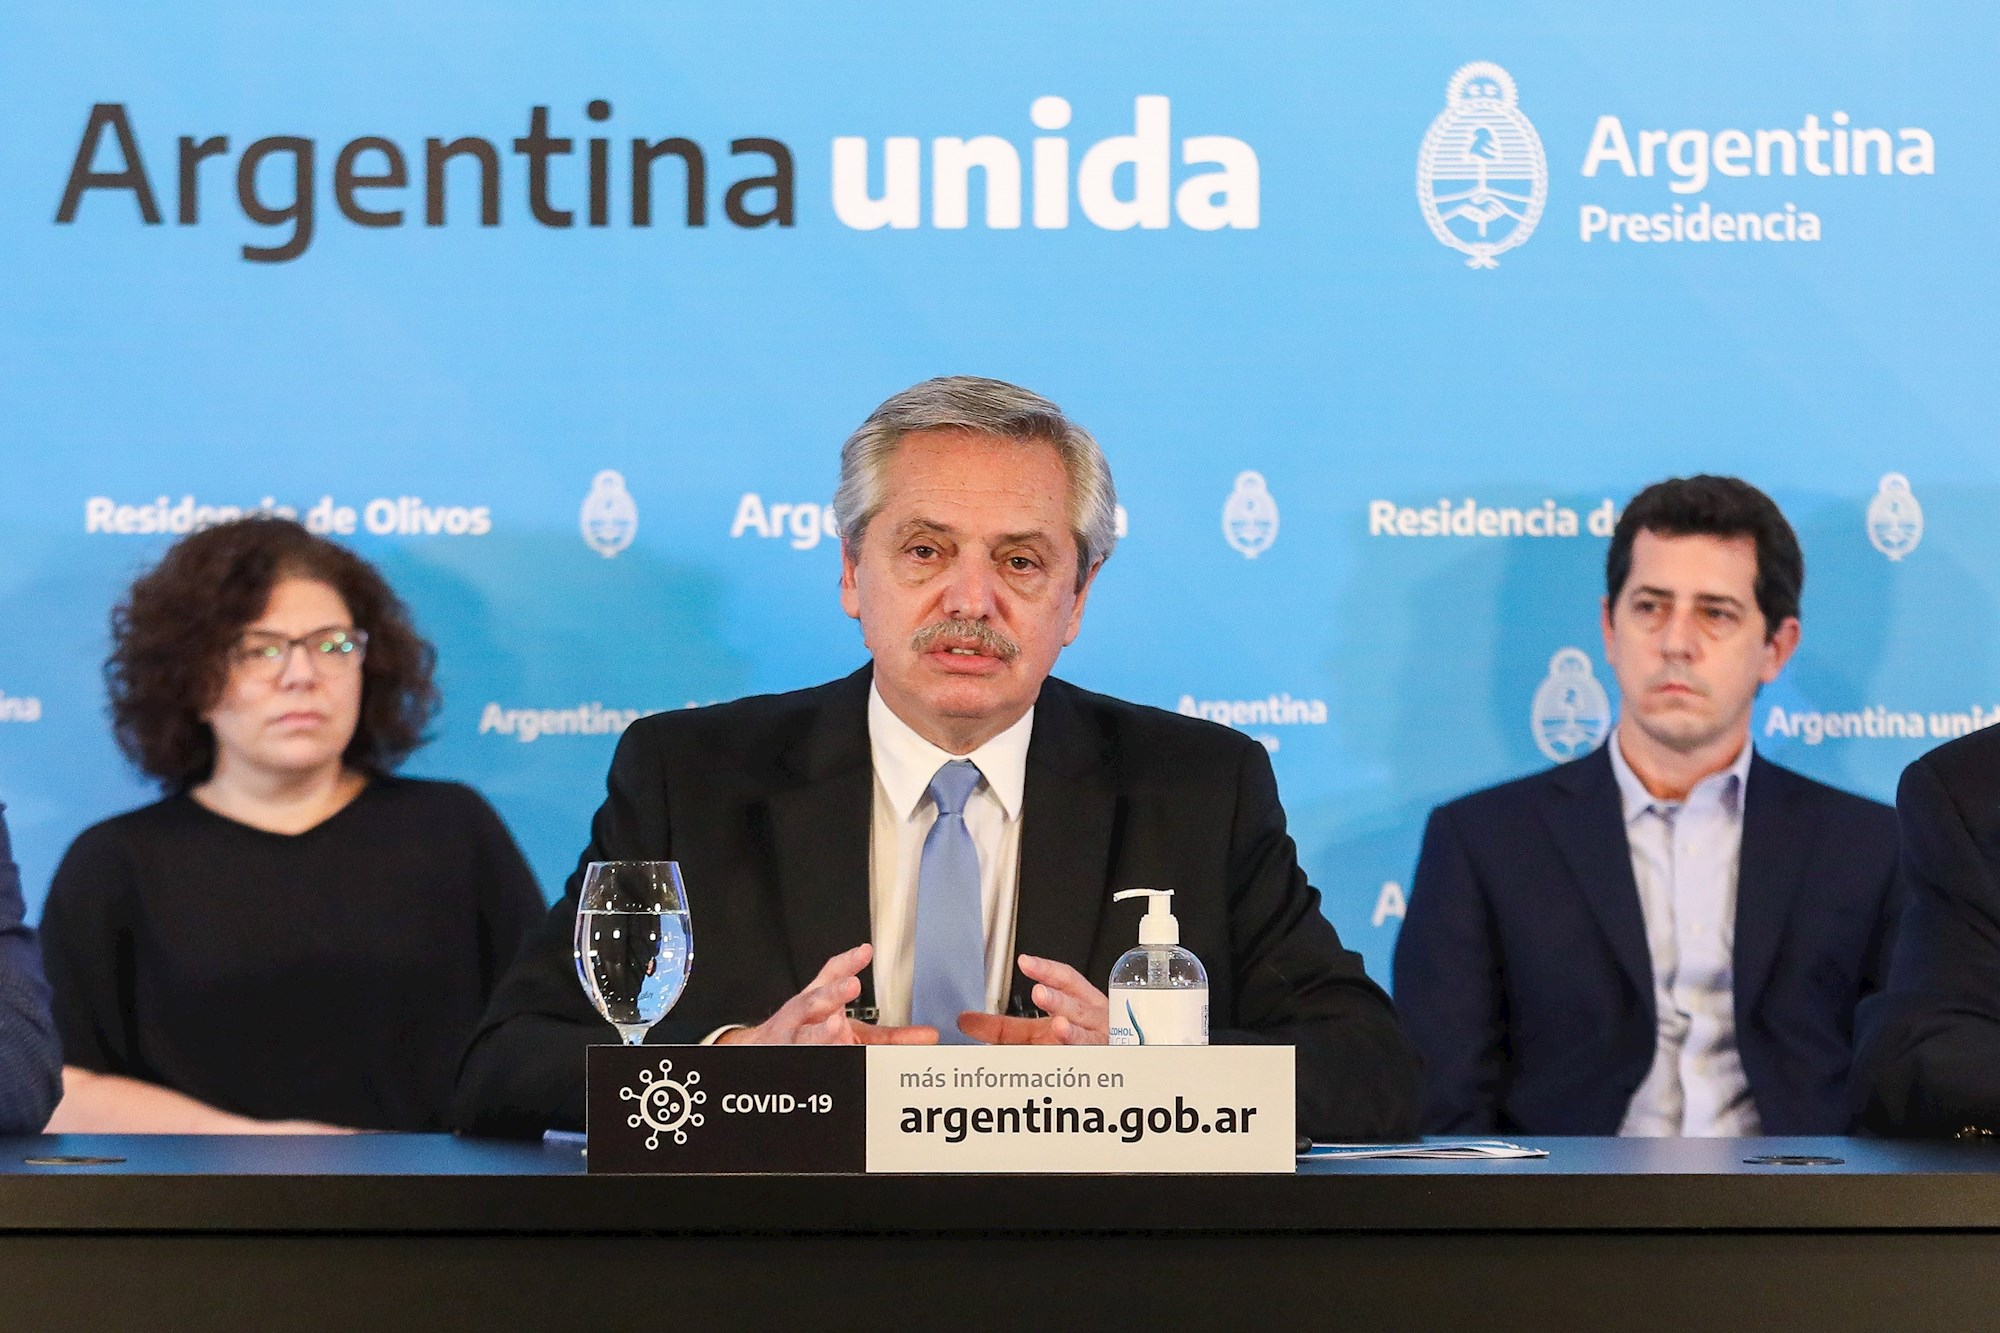 Chile cita a diplomático en Argentina por comentarios de Alberto Fernández